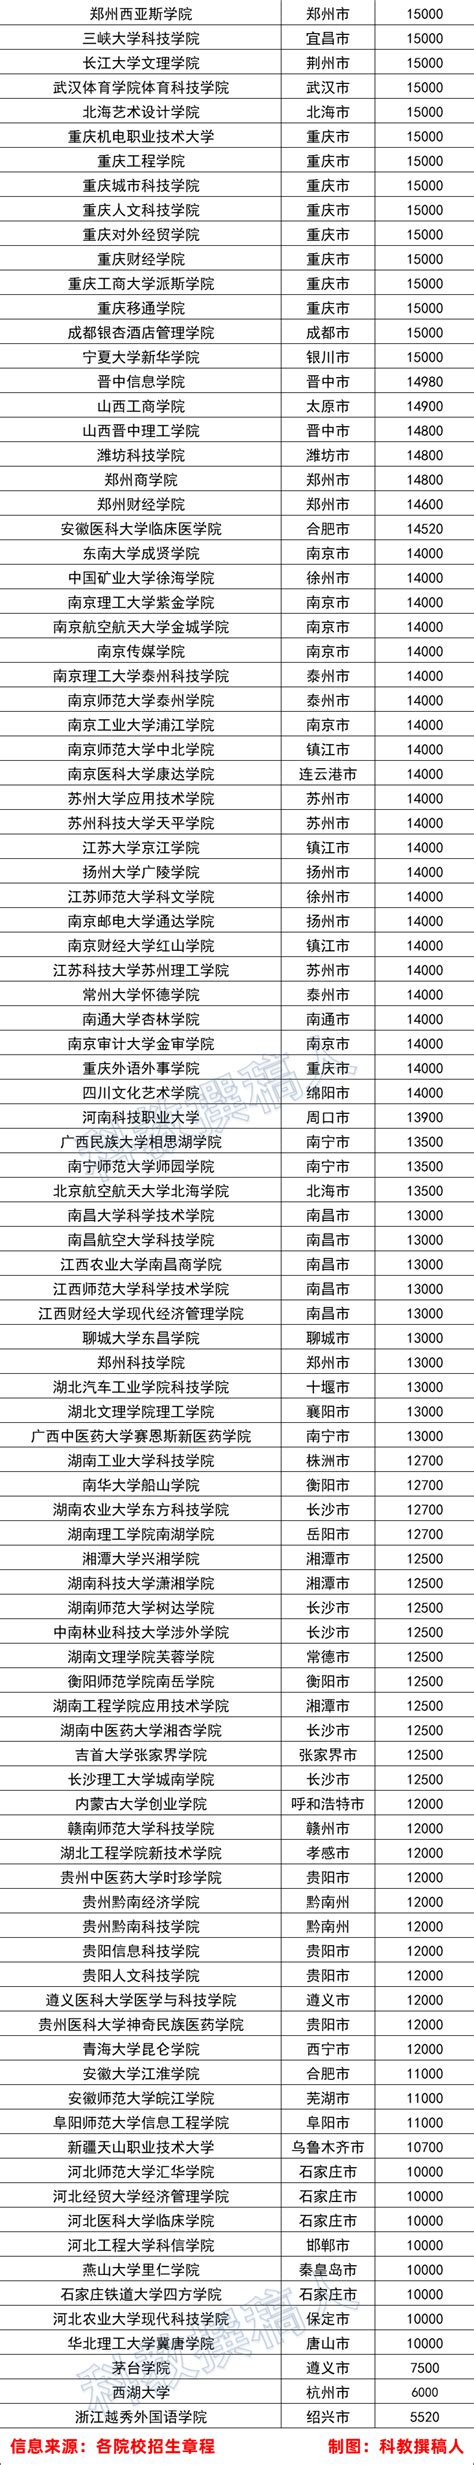 2020年中国985、211名校高考录取最低分排名26省隆重出炉！2019与2020对比出炉！ - 知乎